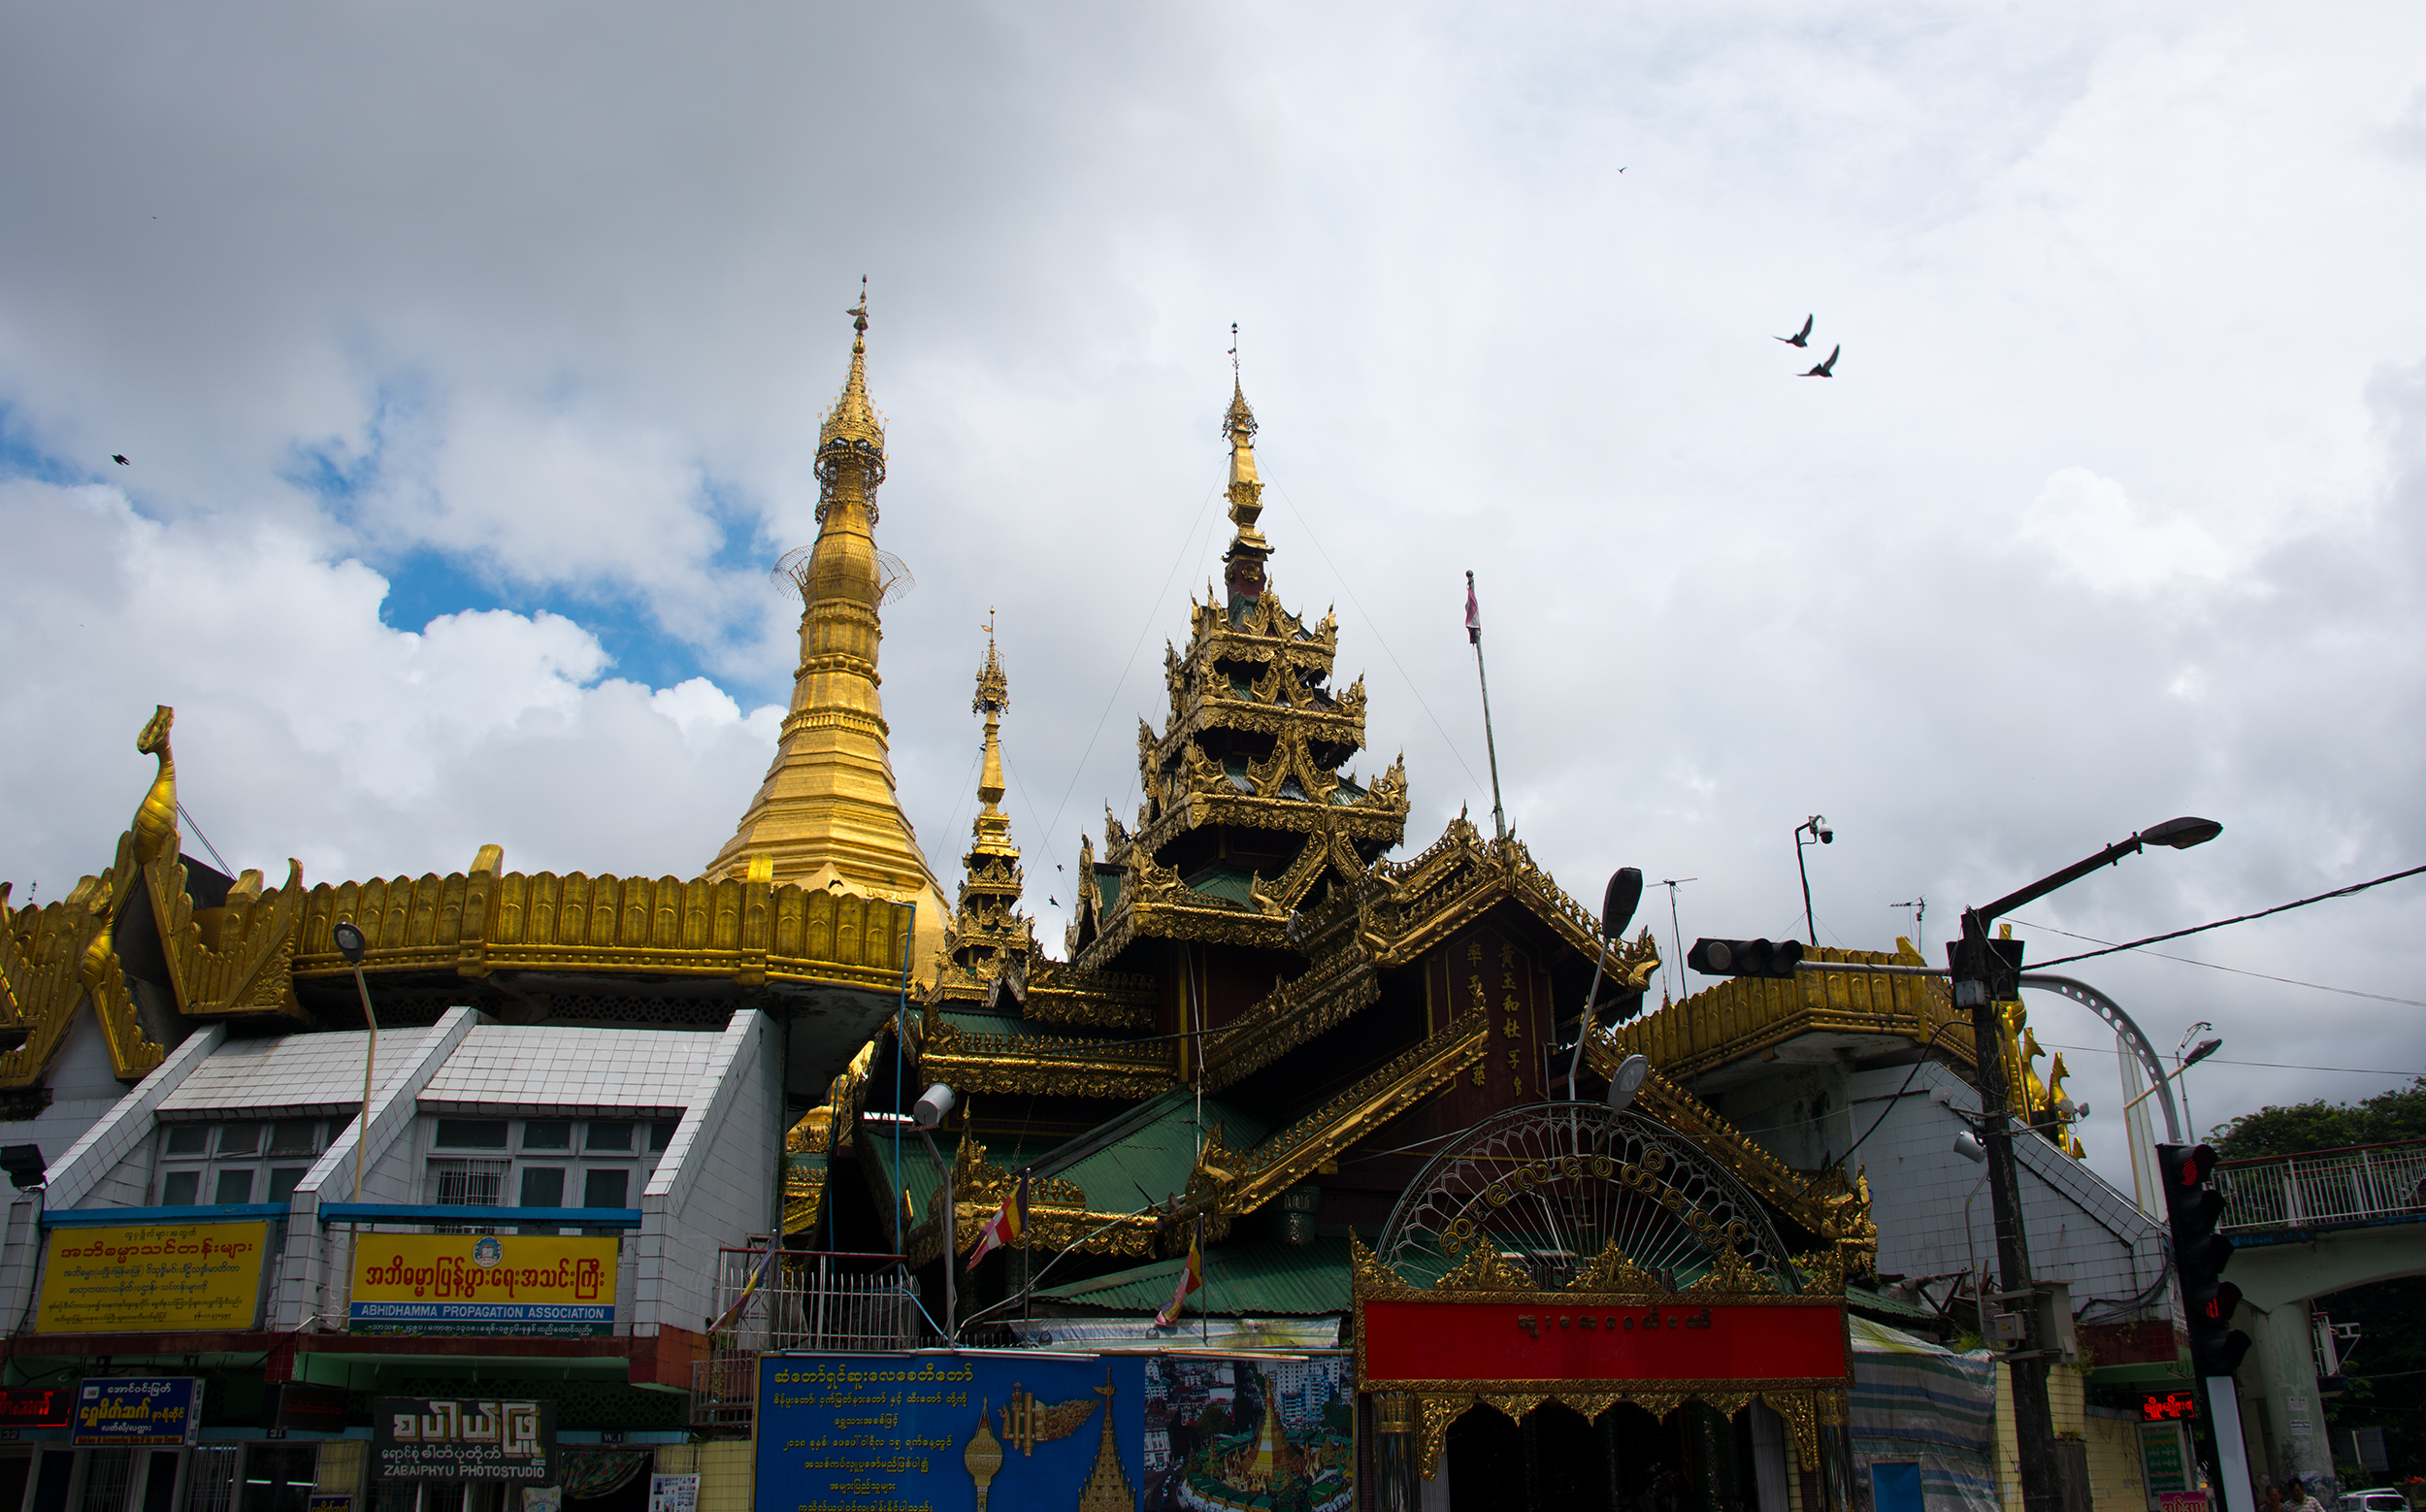 Yangon City, Myanmar : Sule Pagoda